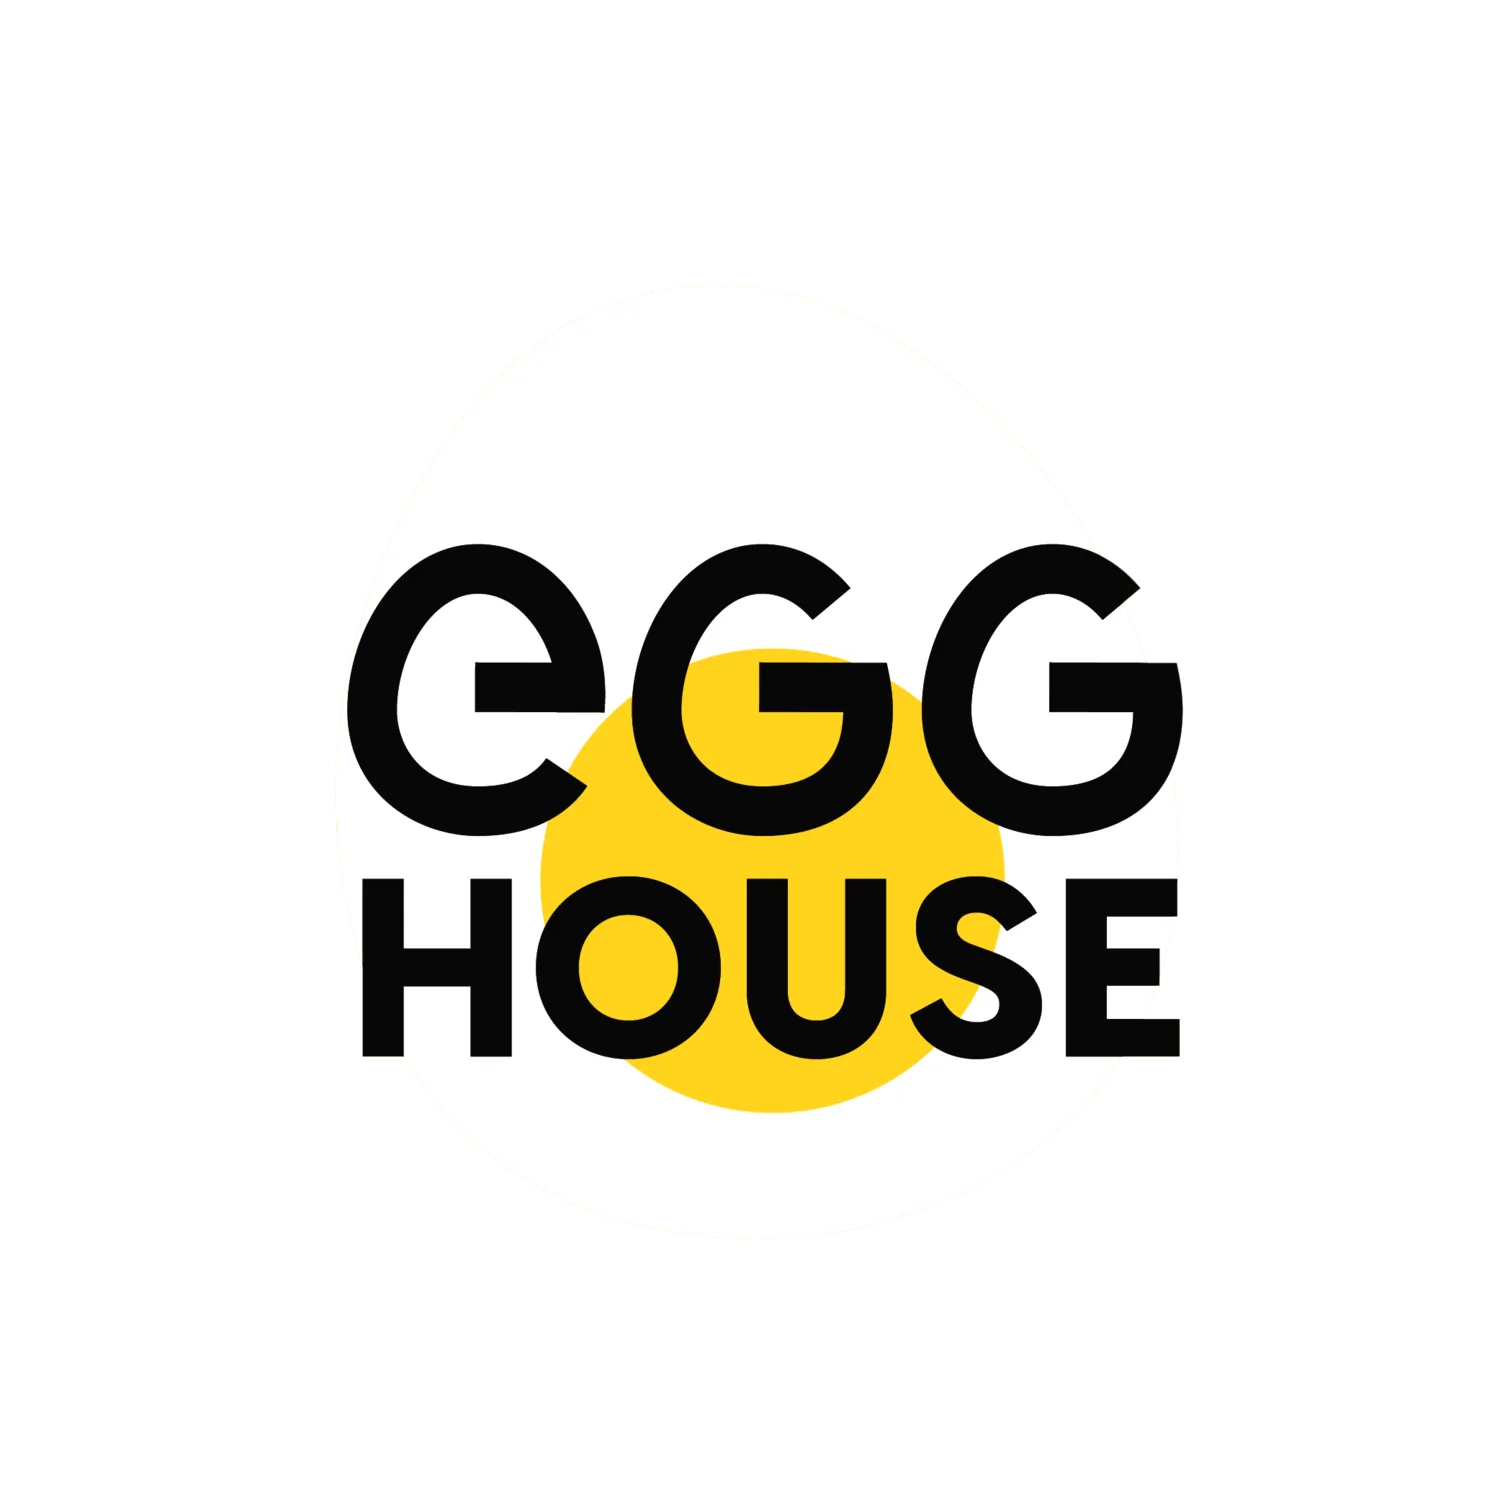 THE EGG HOUSE